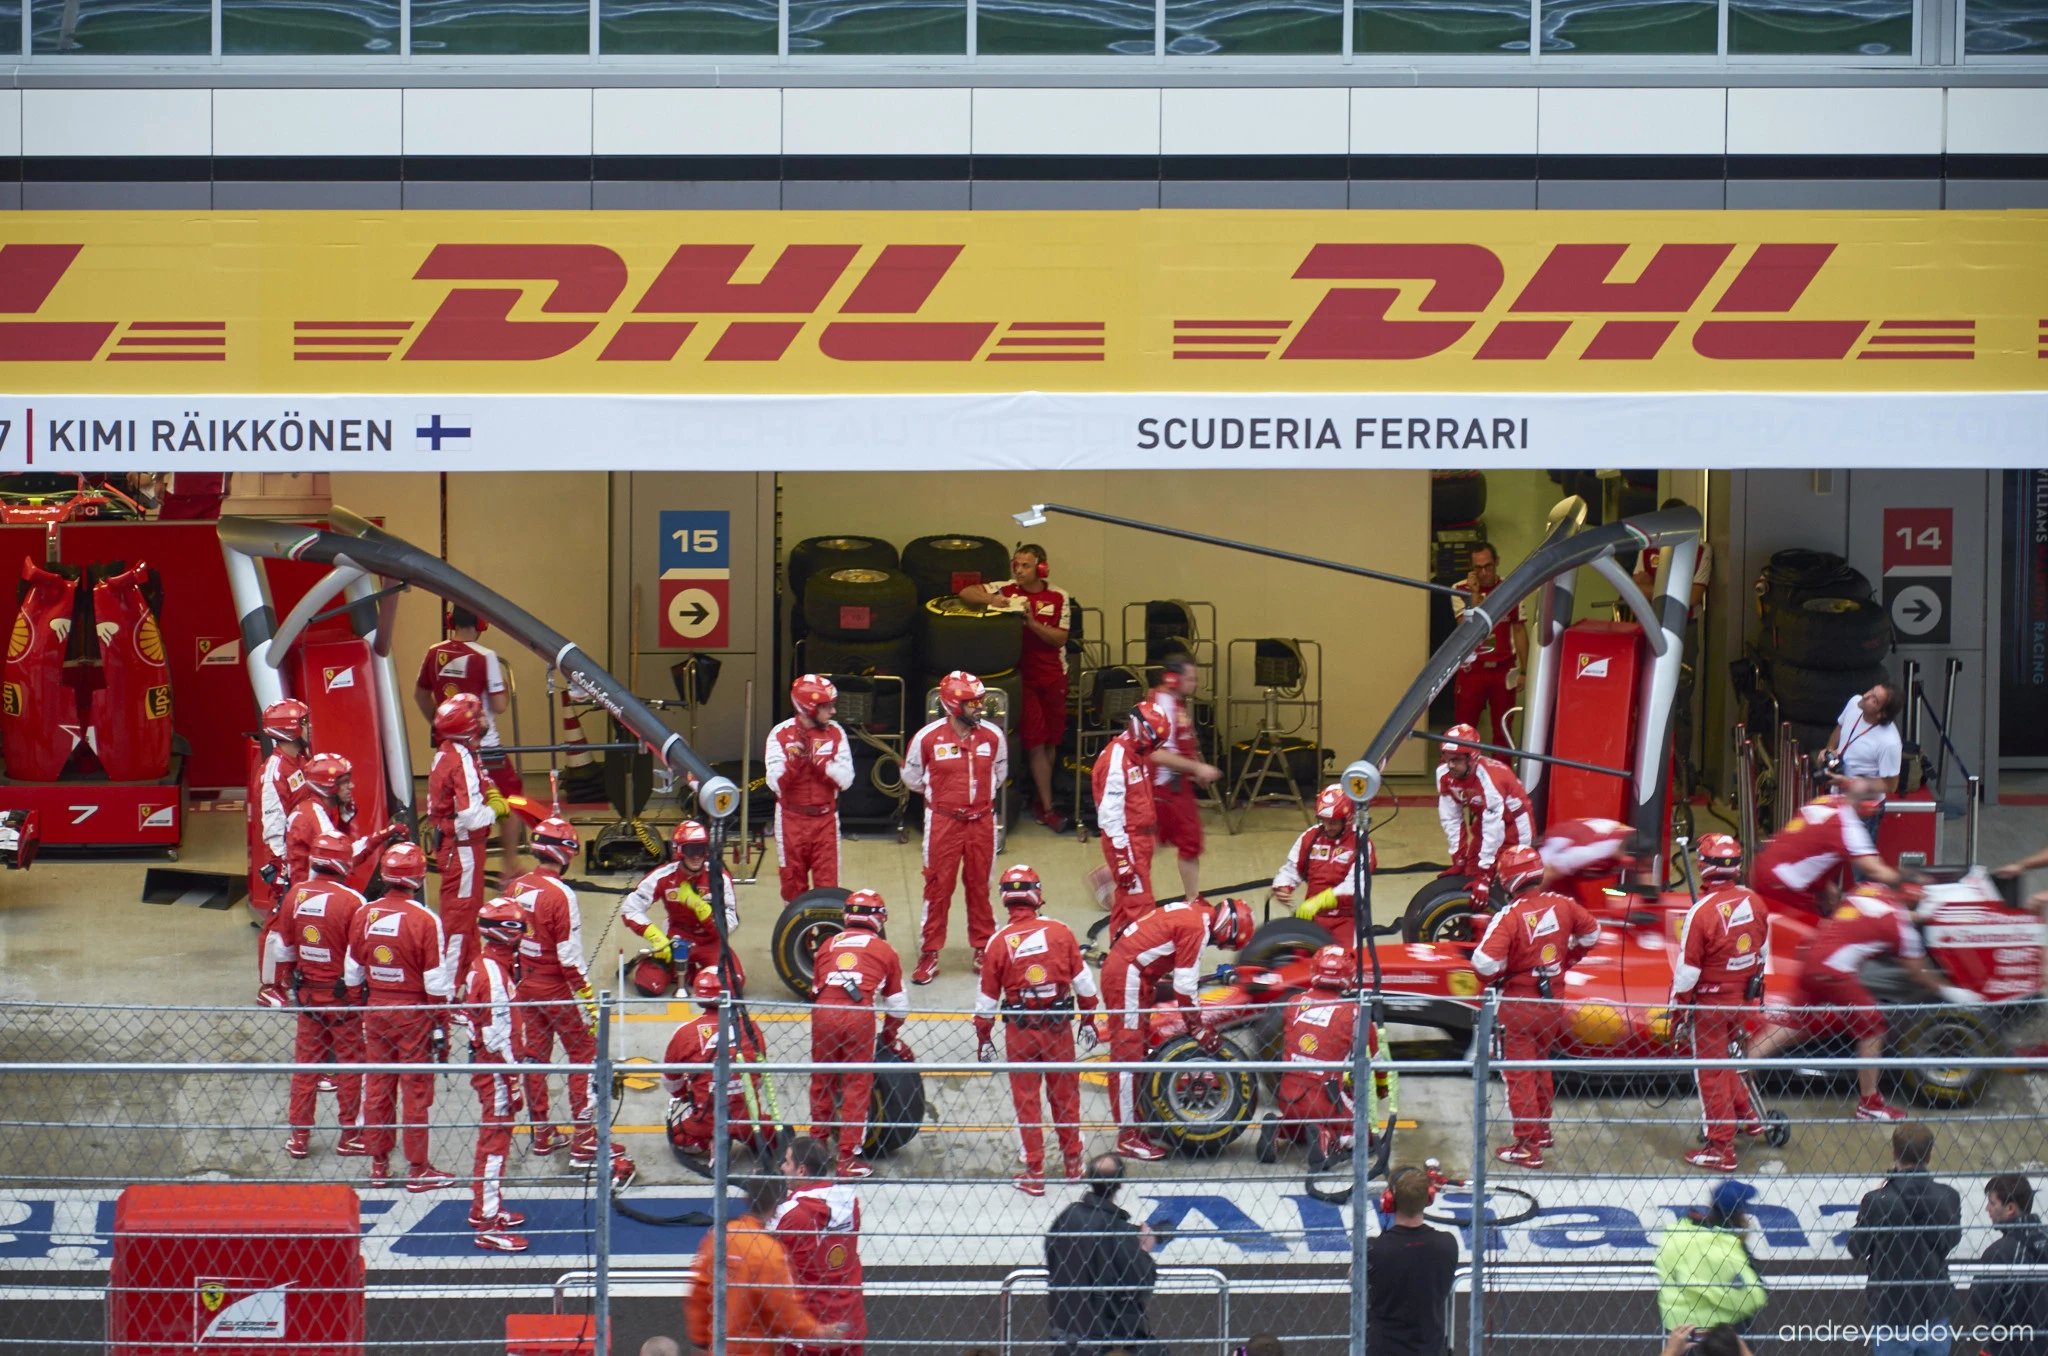 Scuderia Ferrari mechanics performing warm-up exercises.